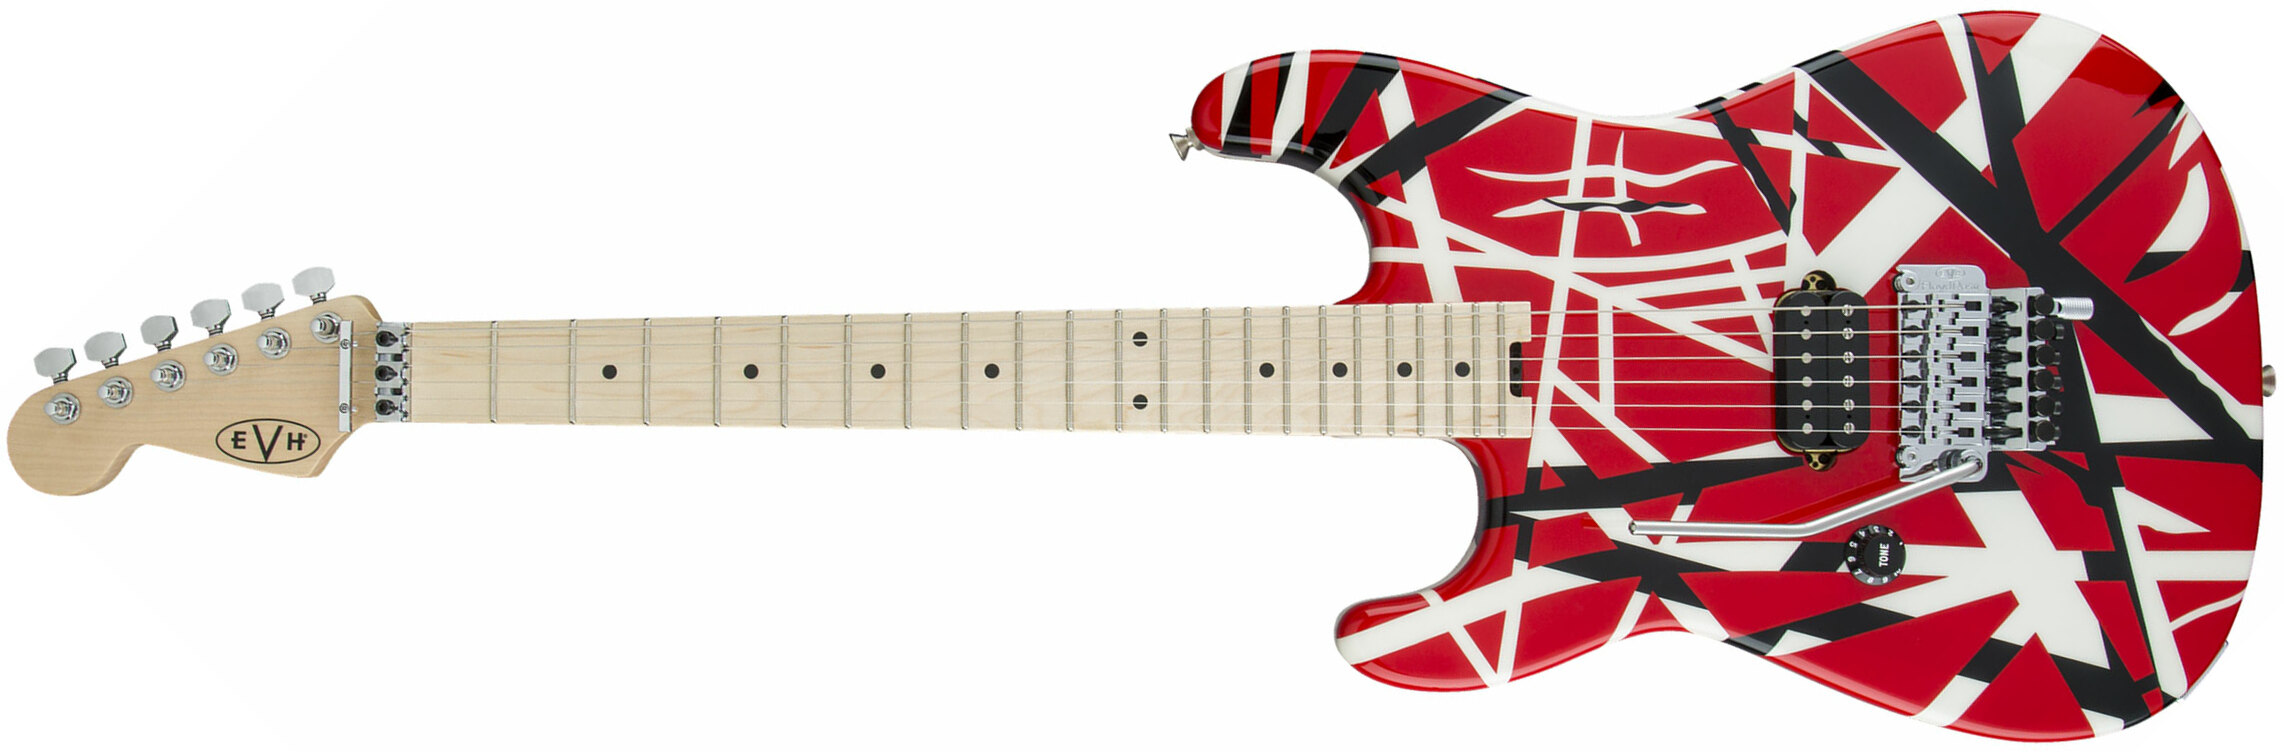 Evh Striped Series Lh Gaucher Signature H Fr Mn - Red Black White Stripes - Guitare Électrique Gaucher - Main picture